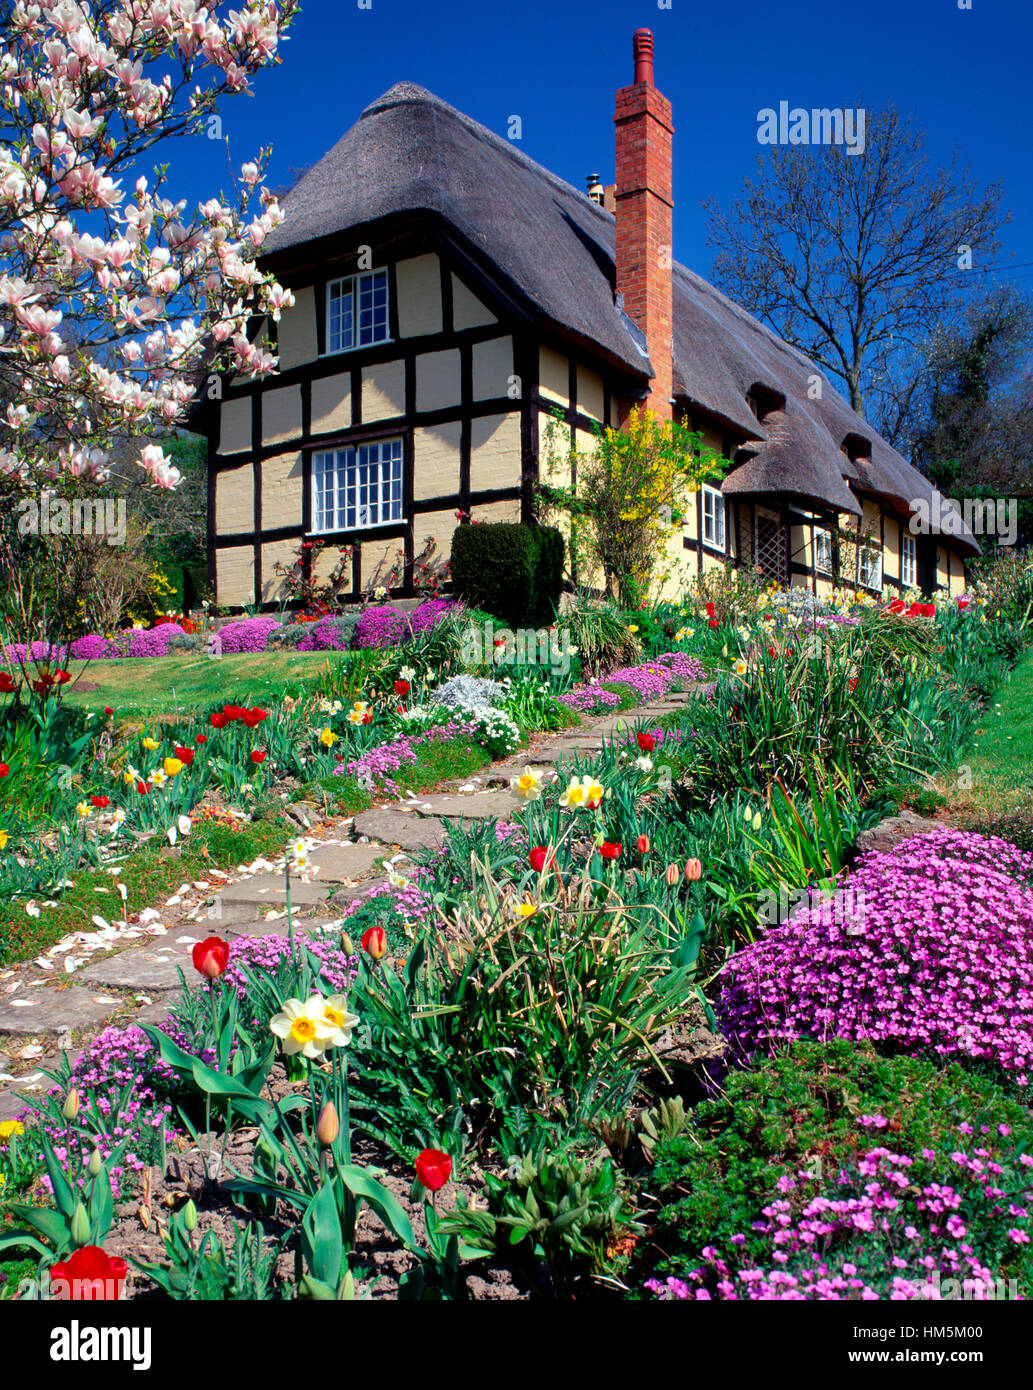 Con tetto in paglia e cottage in legno con fiori di primavera nei pressi di Ledbury, Herefordshire, England, Regno Unito Foto Stock